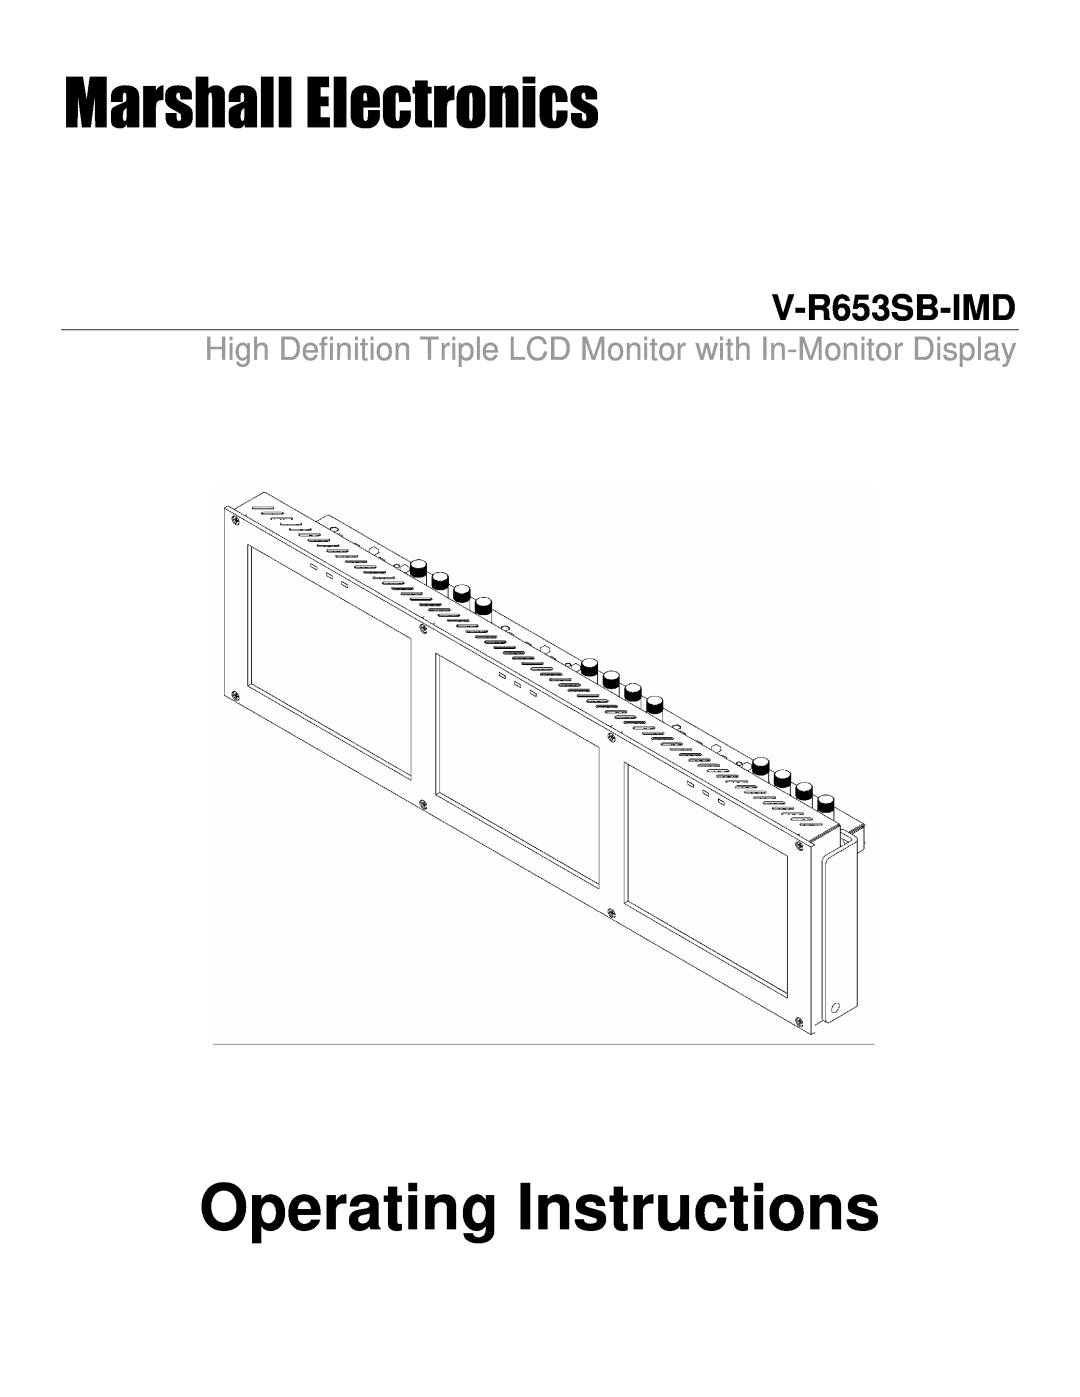 Marshall electronic V-R653SB-IMD manual Marshall Electronics, Operating Instructions 